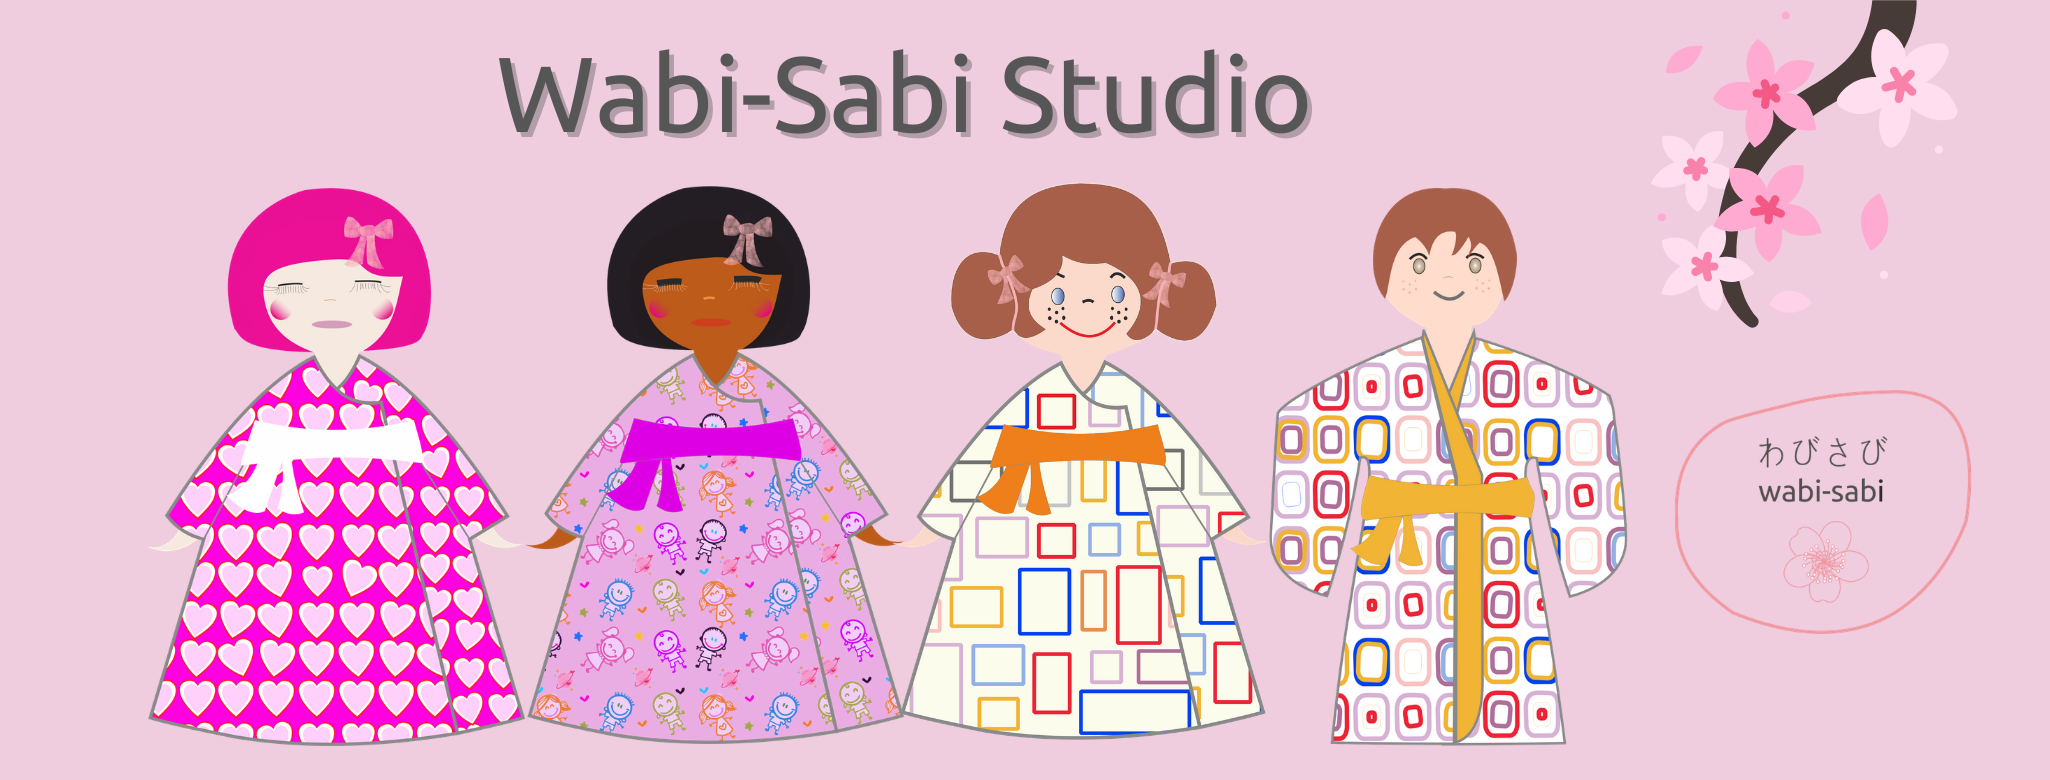 Wabi-Sabi Studio